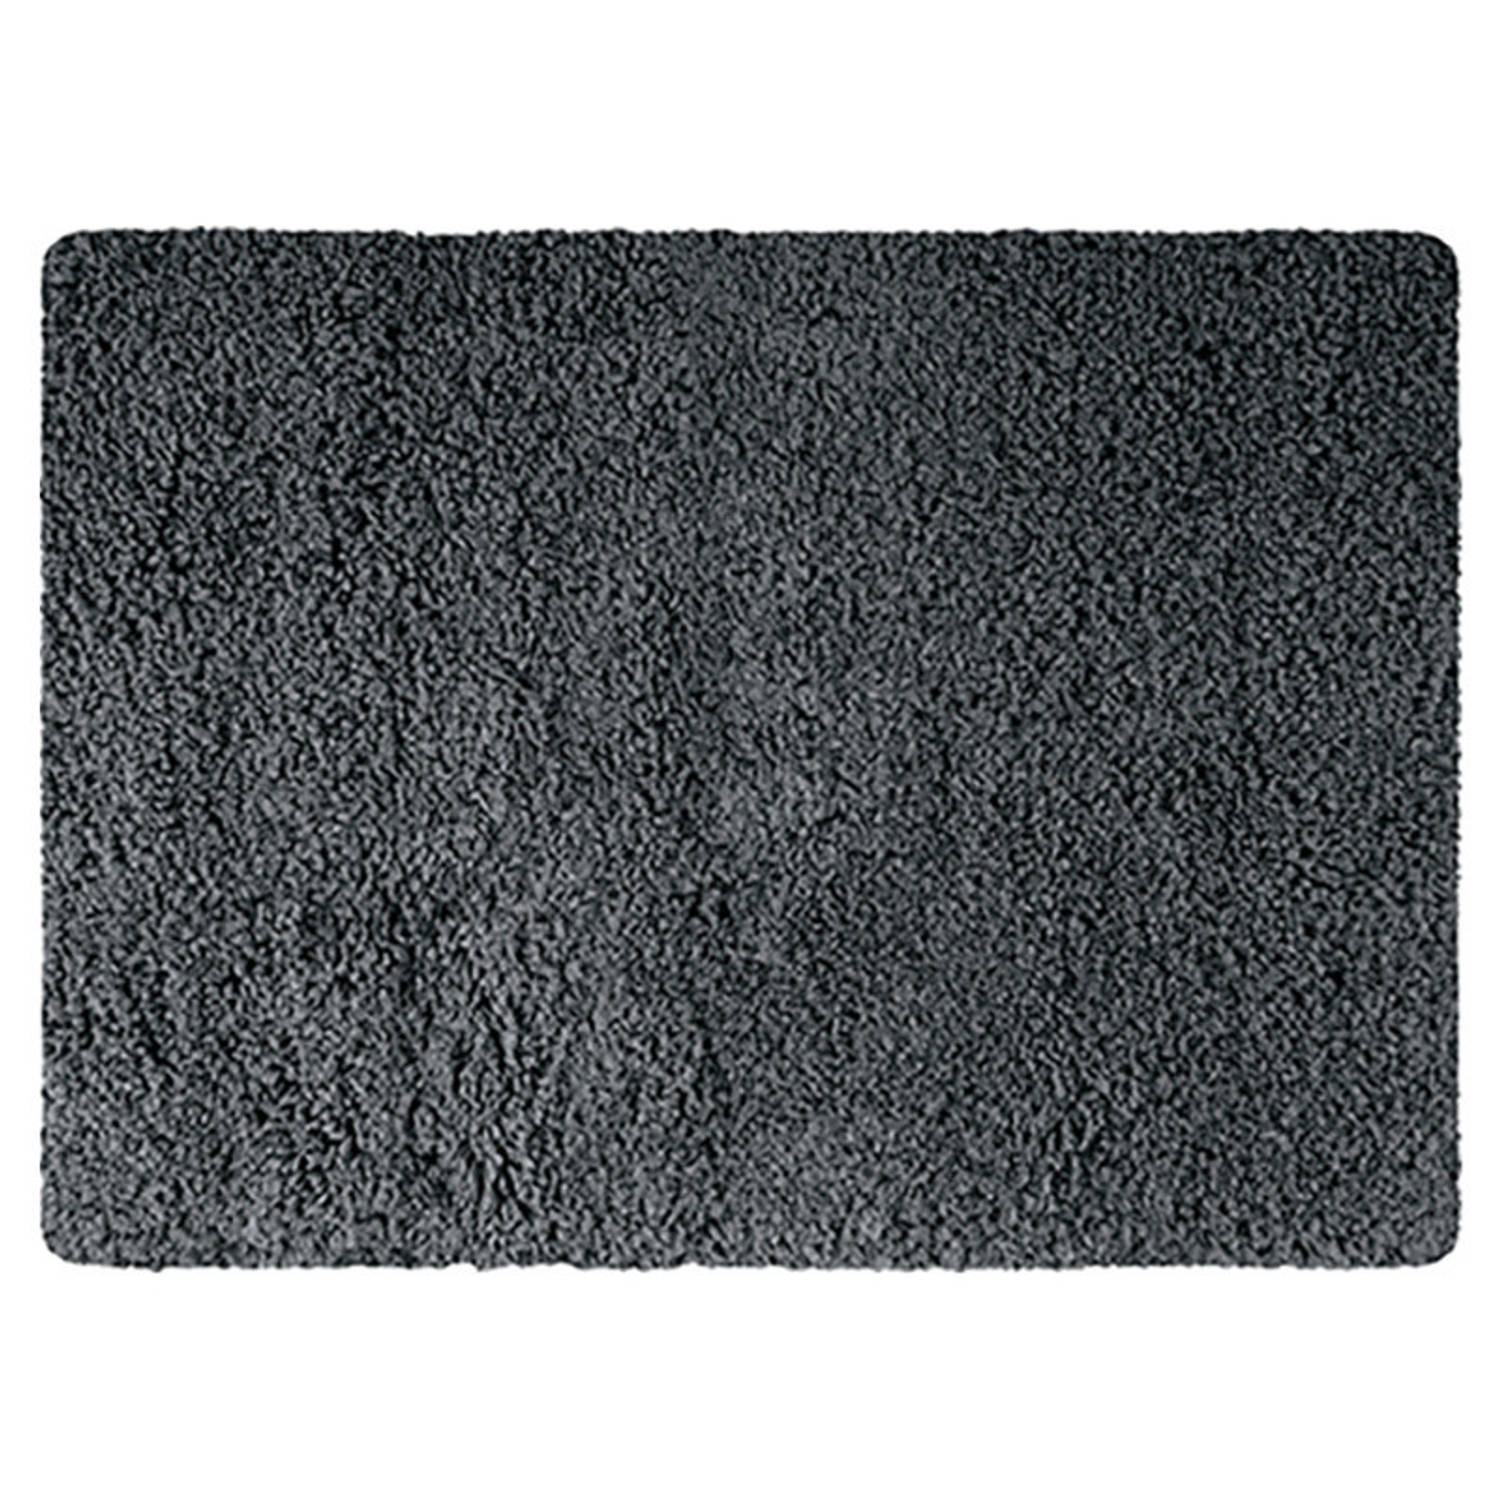 MSV Badkamerkleedje/badmat tapijt - voor de vloer - donkergrijs - 50 x 70 cm - Microfibre - langharig